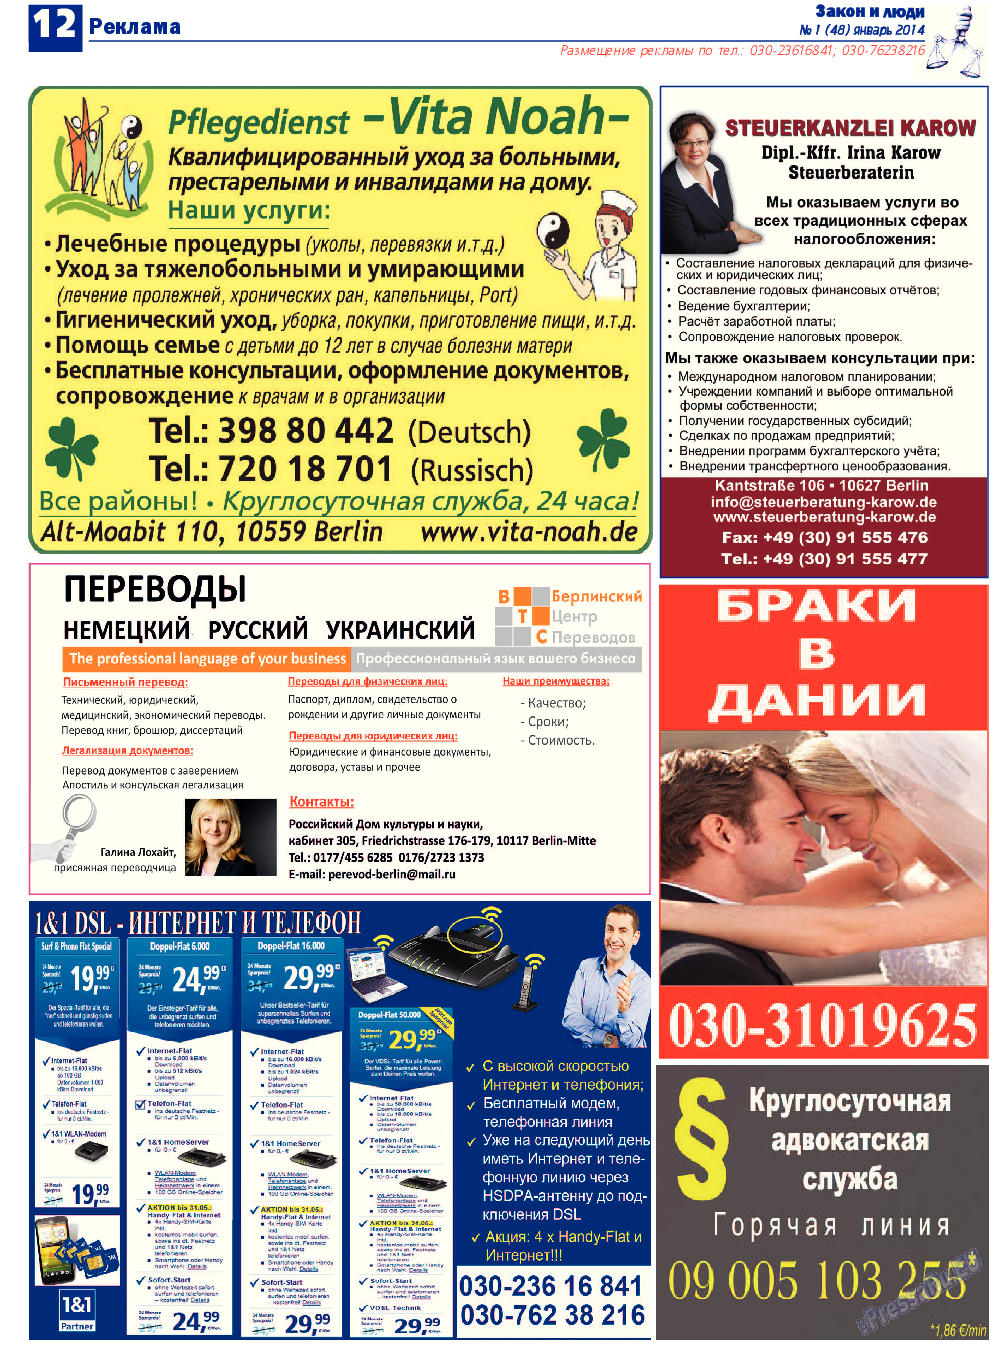 Закон и люди, газета. 2014 №1 стр.12